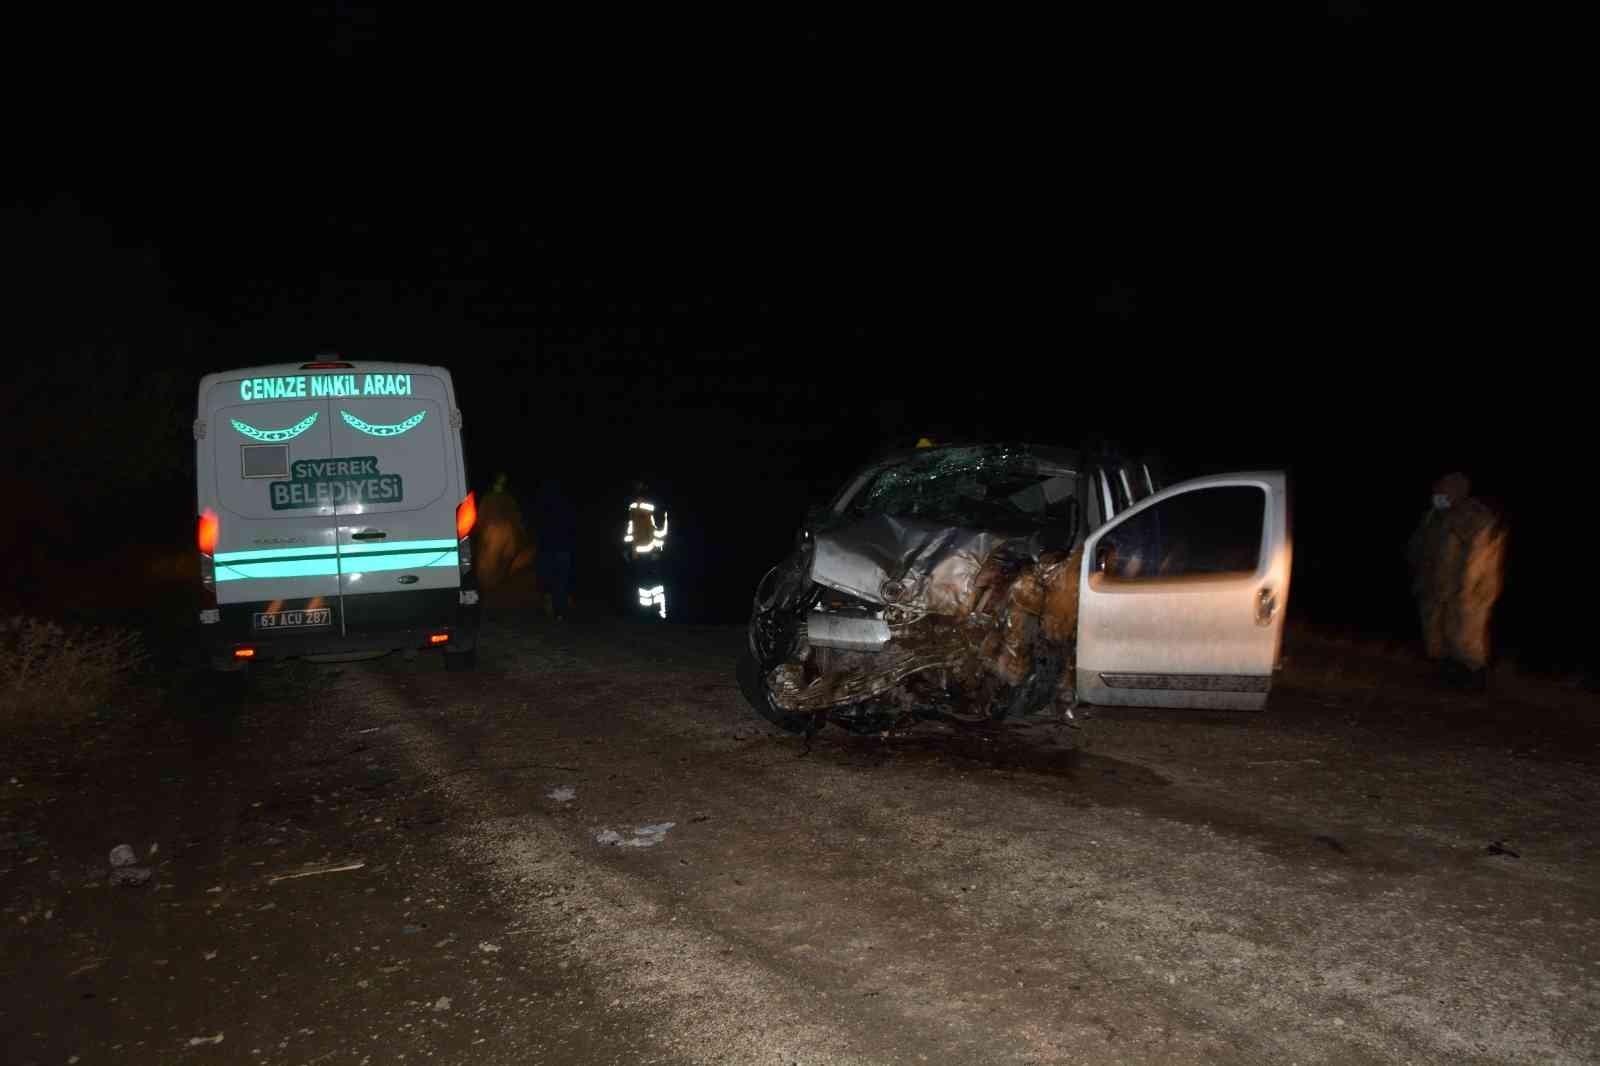 Siverek’te hafif ticari araç uçuruma düştü: 1’i bebek 2 ölü, 6 yaralı #sanliurfa